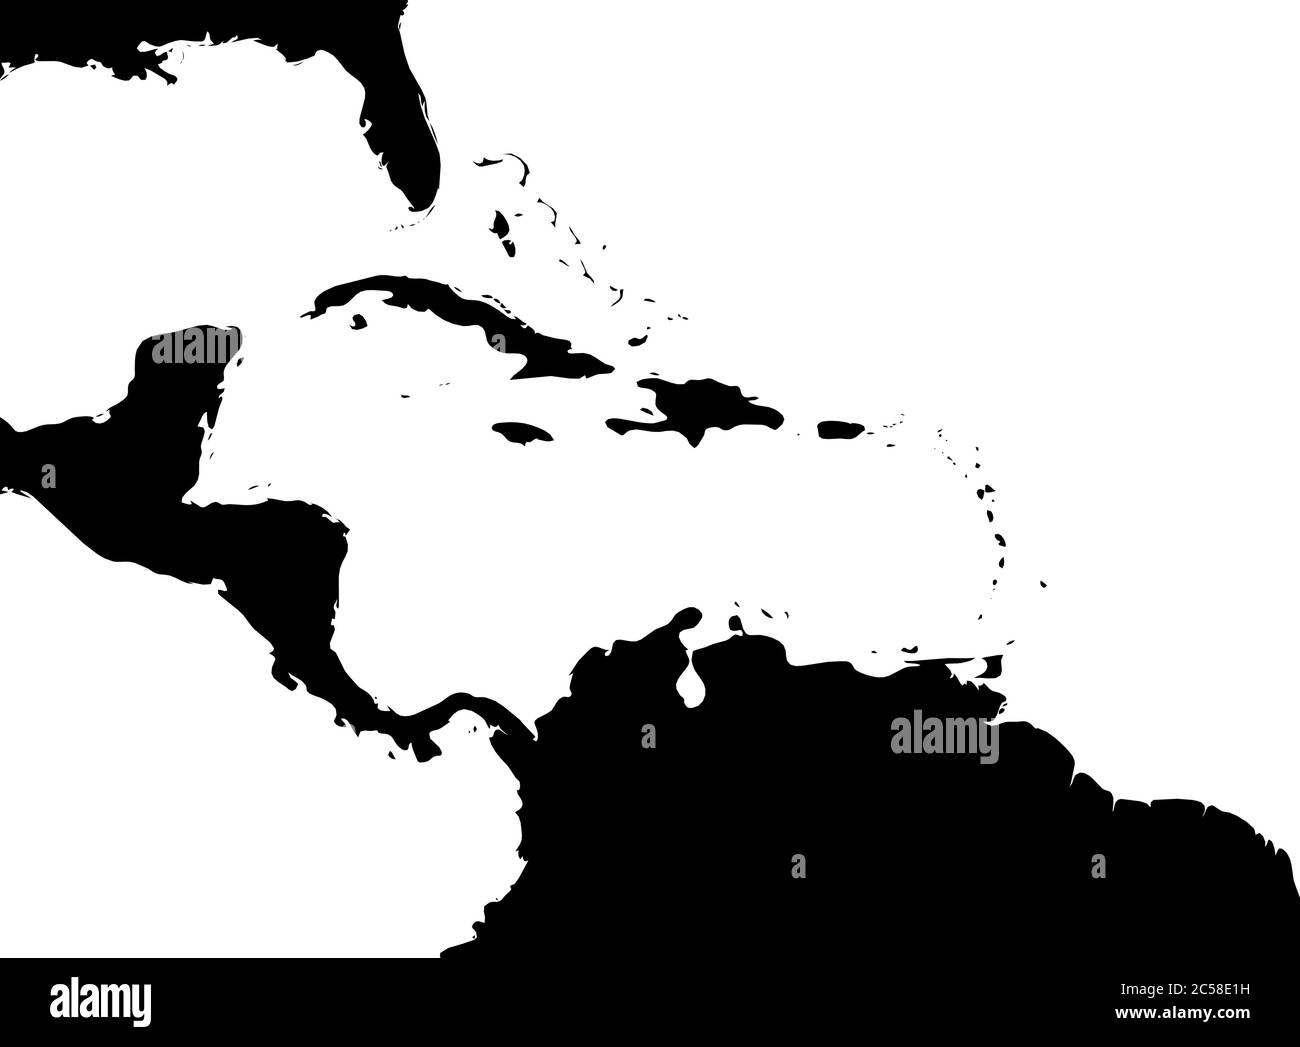 Mapa de la región del Caribe y Centroamérica. Silueta de tierra negra y agua blanca. Ilustración simple de vector plano. Ilustración del Vector